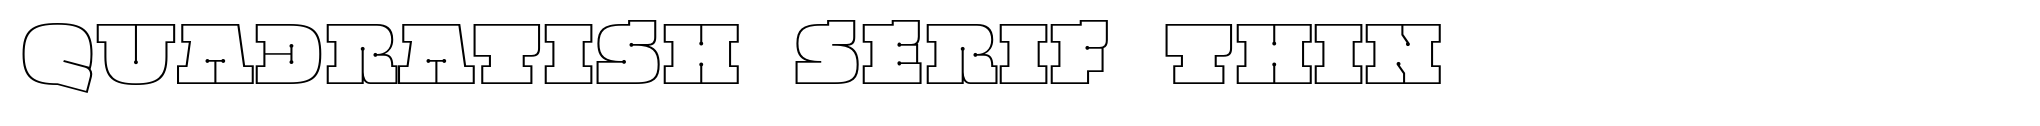 Quadratish Serif Thin image